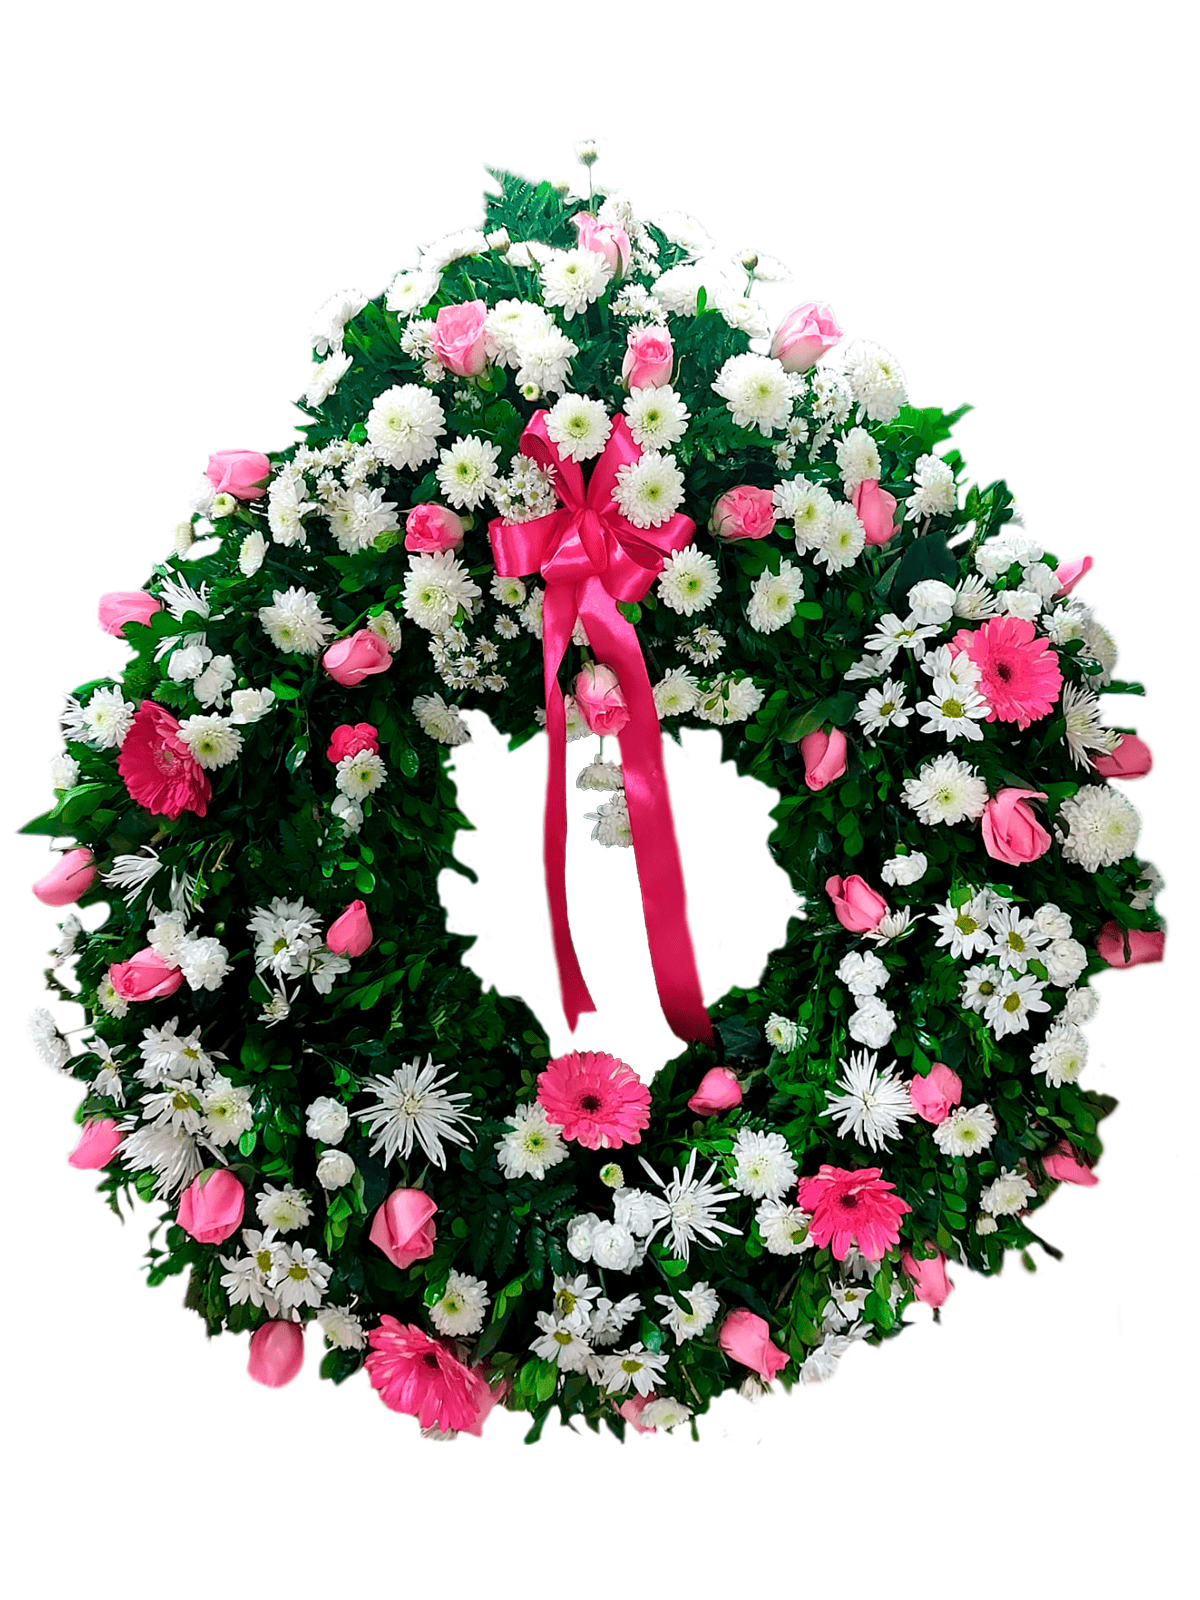 CF-04 Corona Fúnebre Blanca y Rosada (Rosas, Gerberas y Crisantemos)